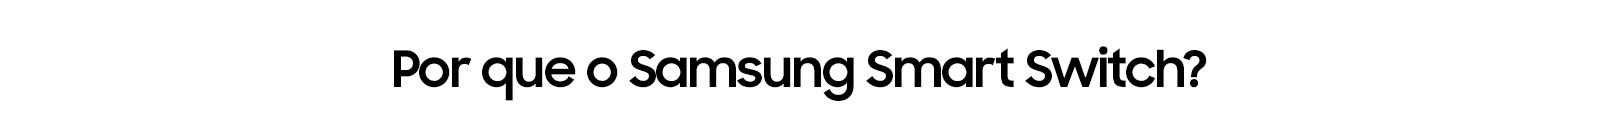 Por que o Samsung Smart Switch?